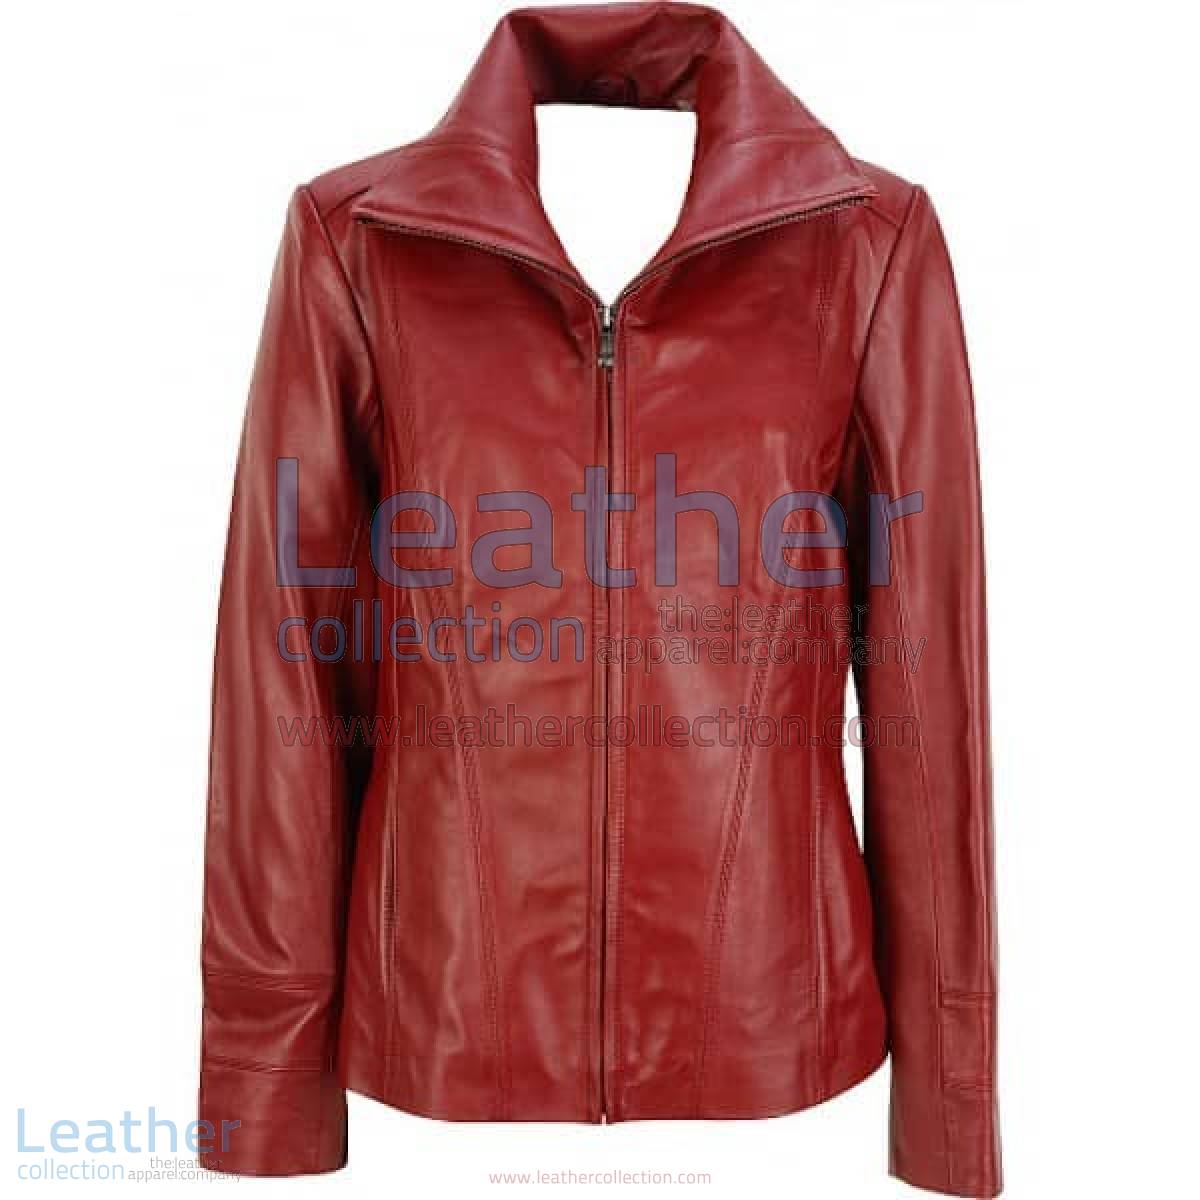 Dark Red Leather Fashion Jacket | leather fashion jacket